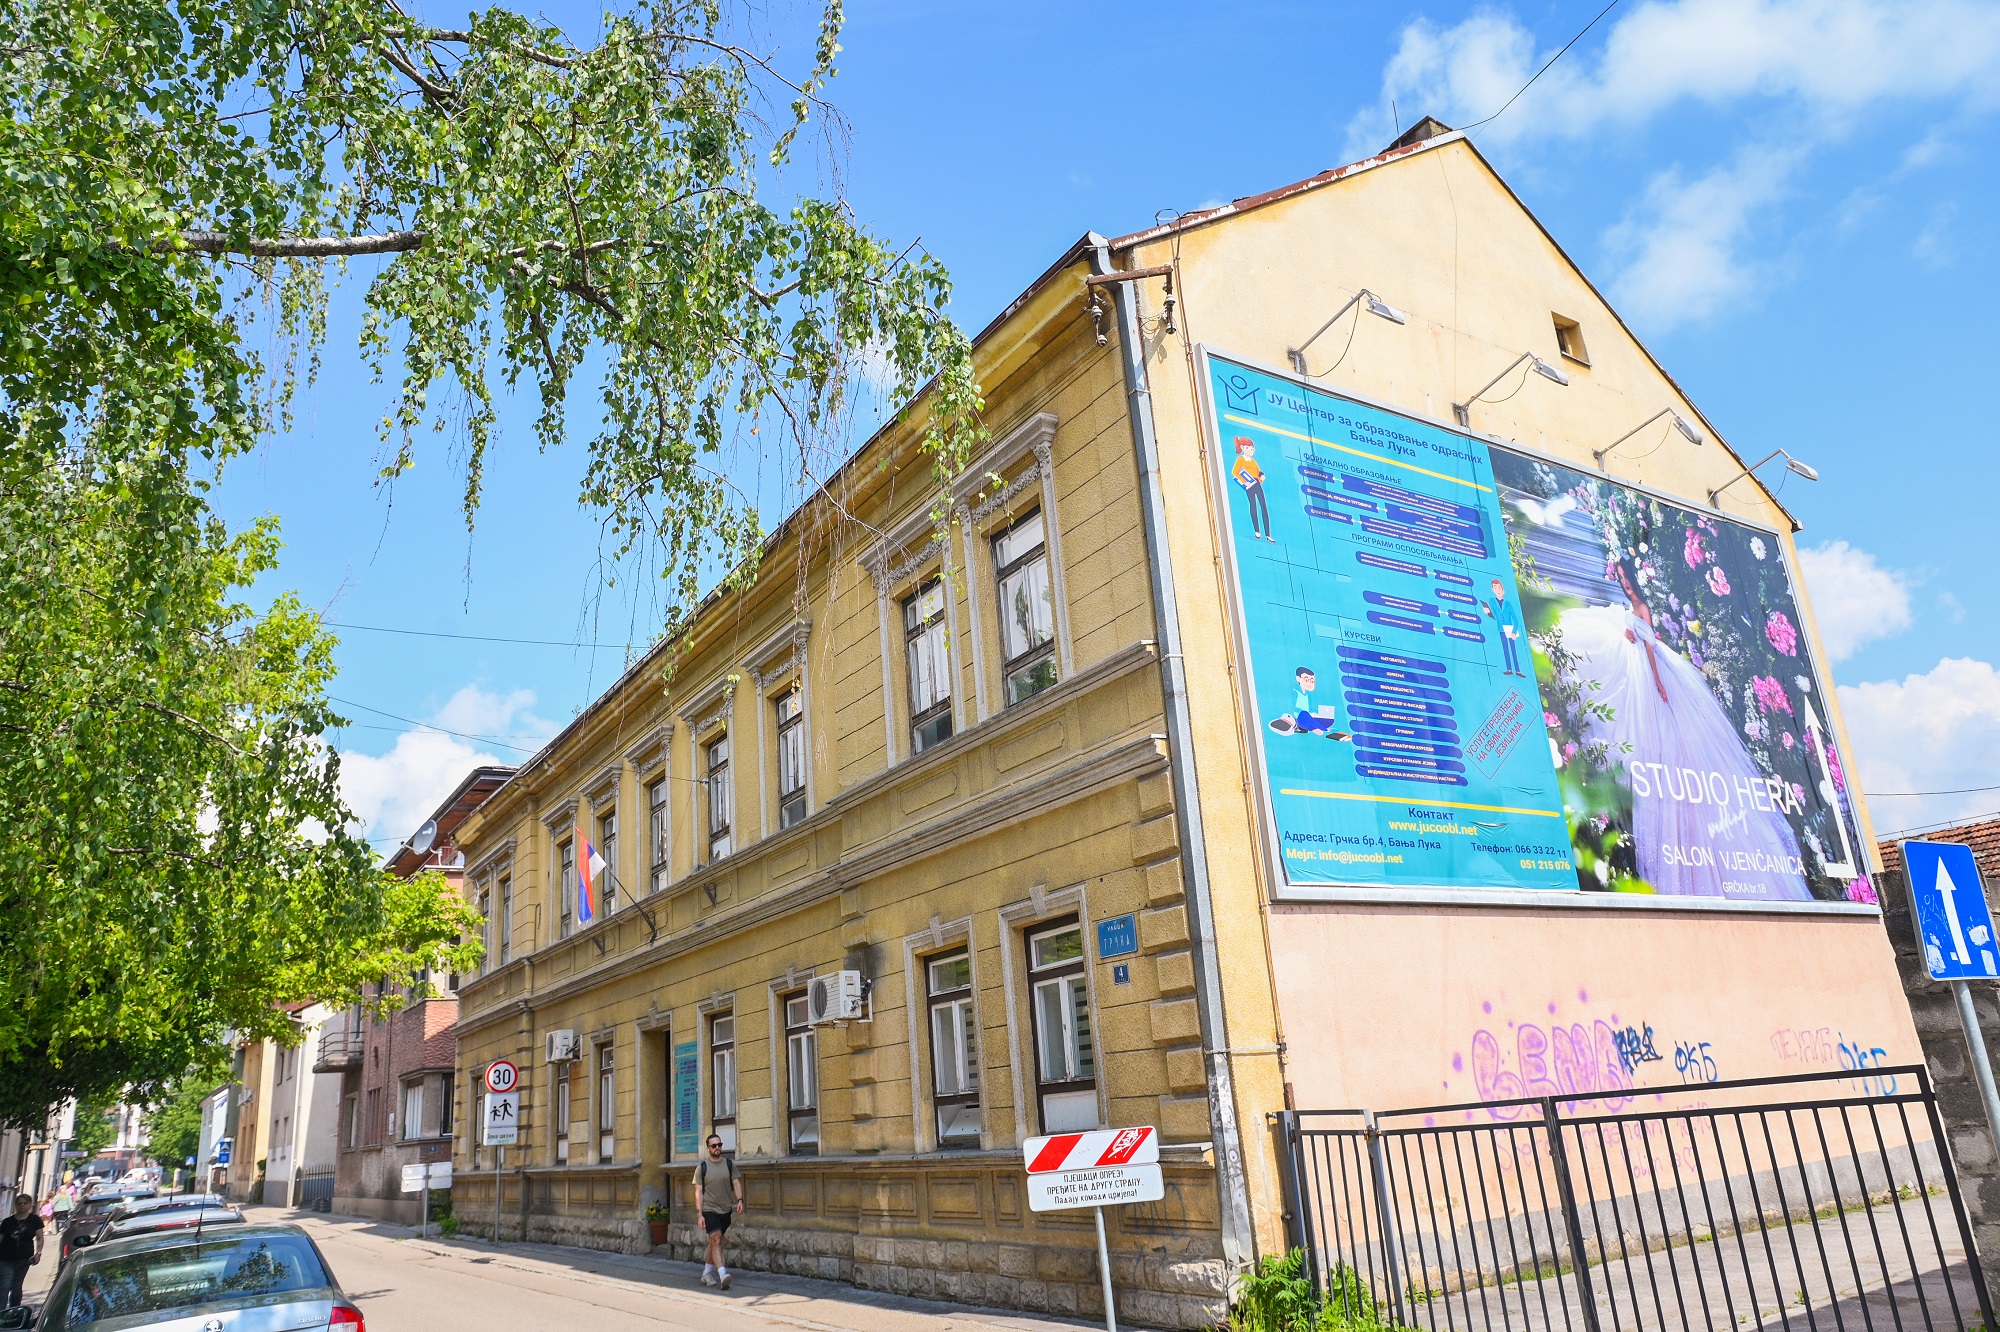 PRESUDA VRHOVNOG SUDA Banjaluka vratila u svoje vlasništvo zgradu Radničkog univerziteta